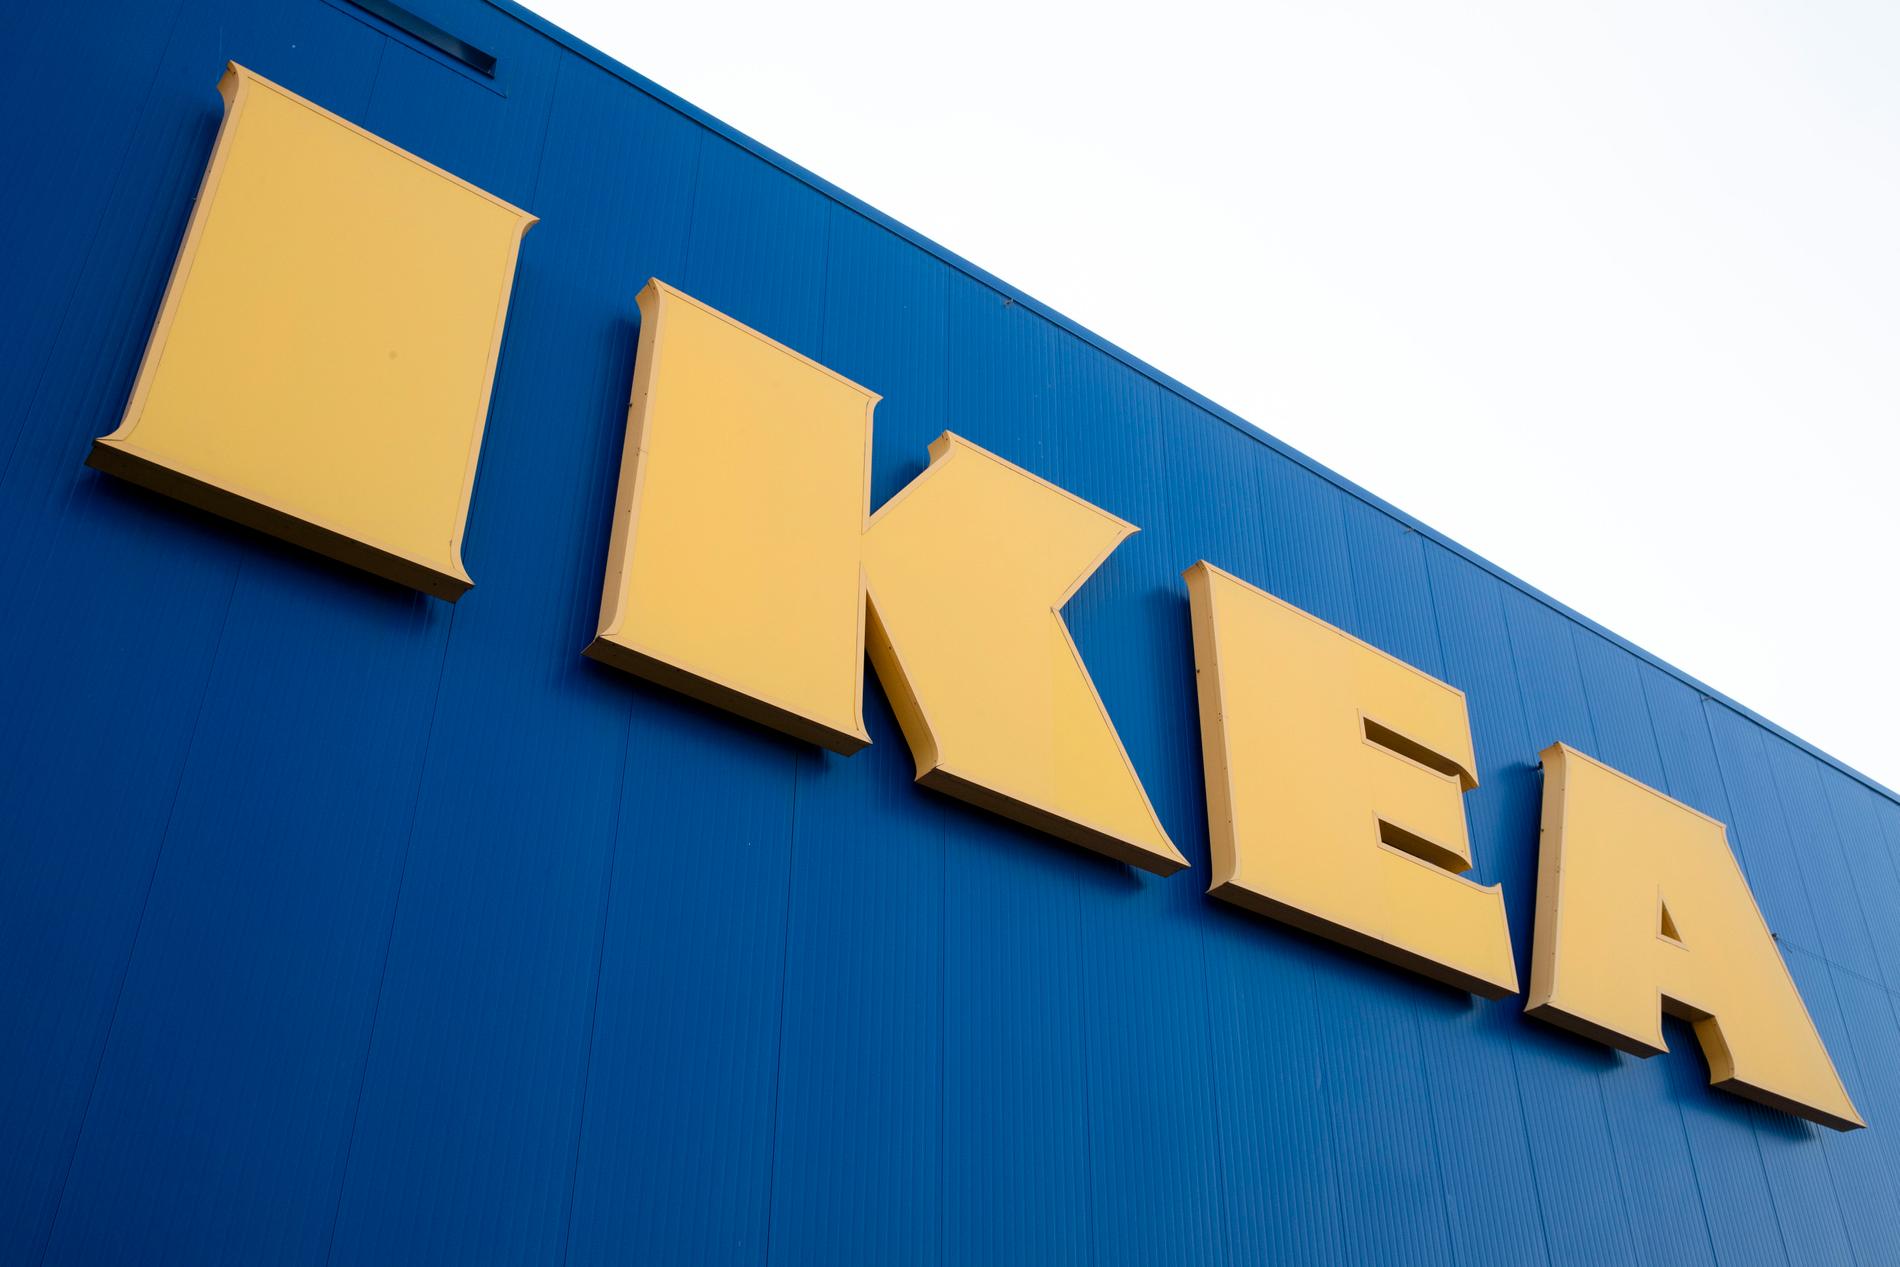 Ikea storsatsar i Stockholmsregionen och öppnar nya minivaruhus.